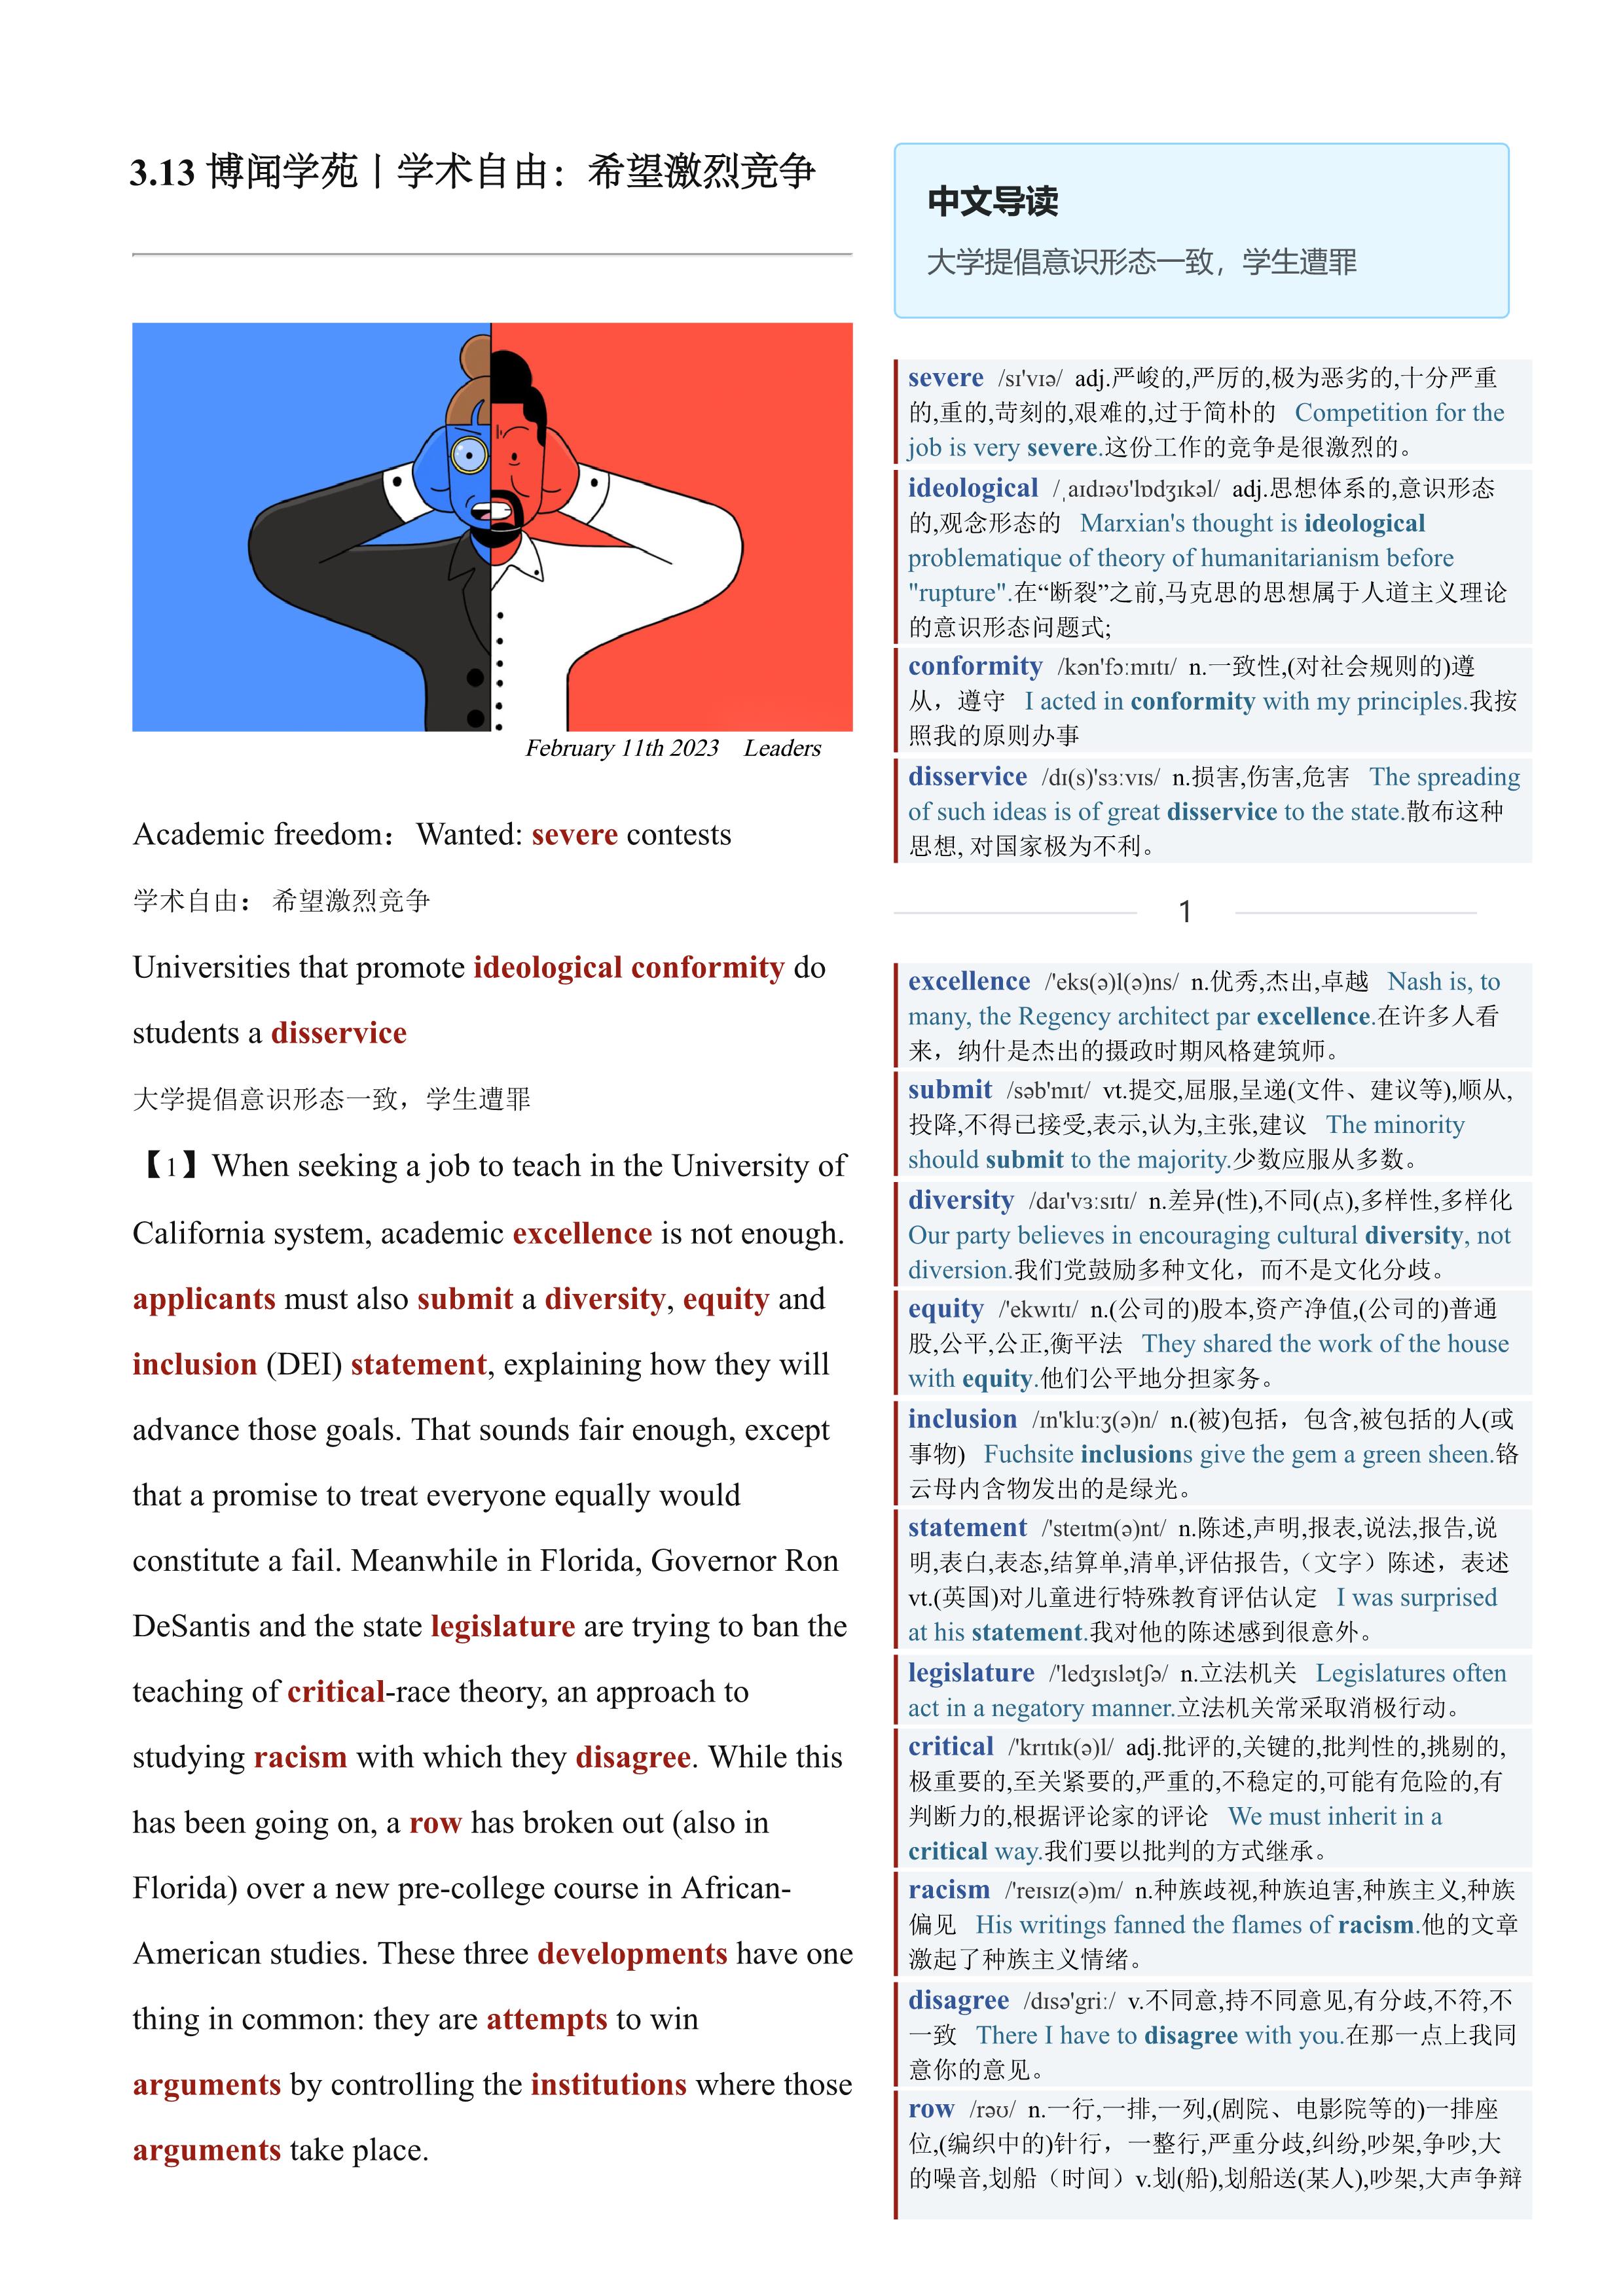 2023.03.13 经济学人双语精读丨学术自由：希望激烈竞争 (.PDF/DOC/MP3)